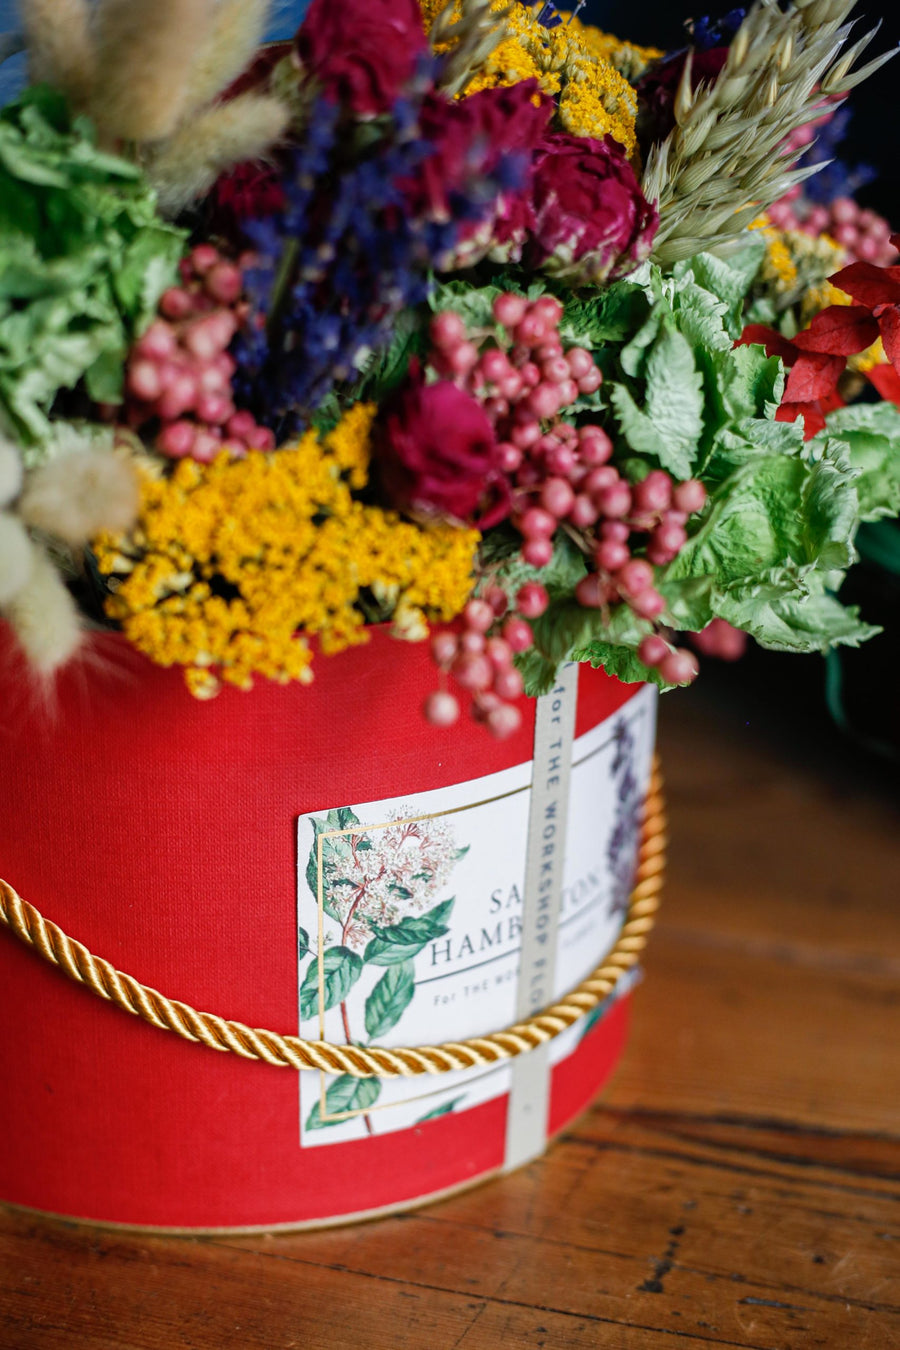 luxury-box-sombrerera-roja-pequena-flores-secas-regalo-sally-hambleton-03